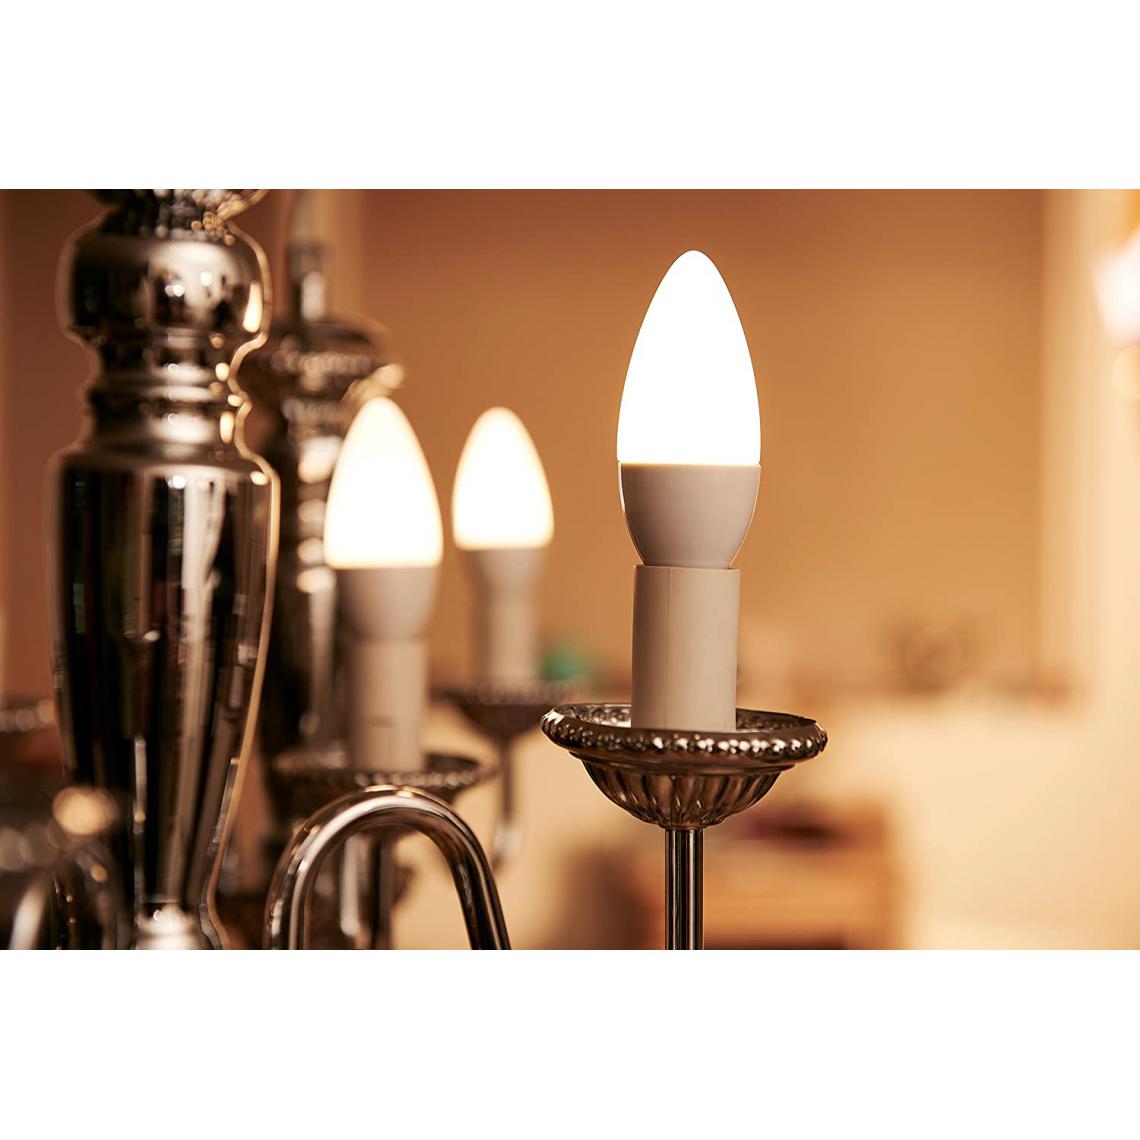 Philips - La lampe LED Philips remplace le blanc chaud (2700 Kelvin), 470 lumens, bougie, Plastique, blanc chaud, E14, 5.5W, 240V - Ampoules LED